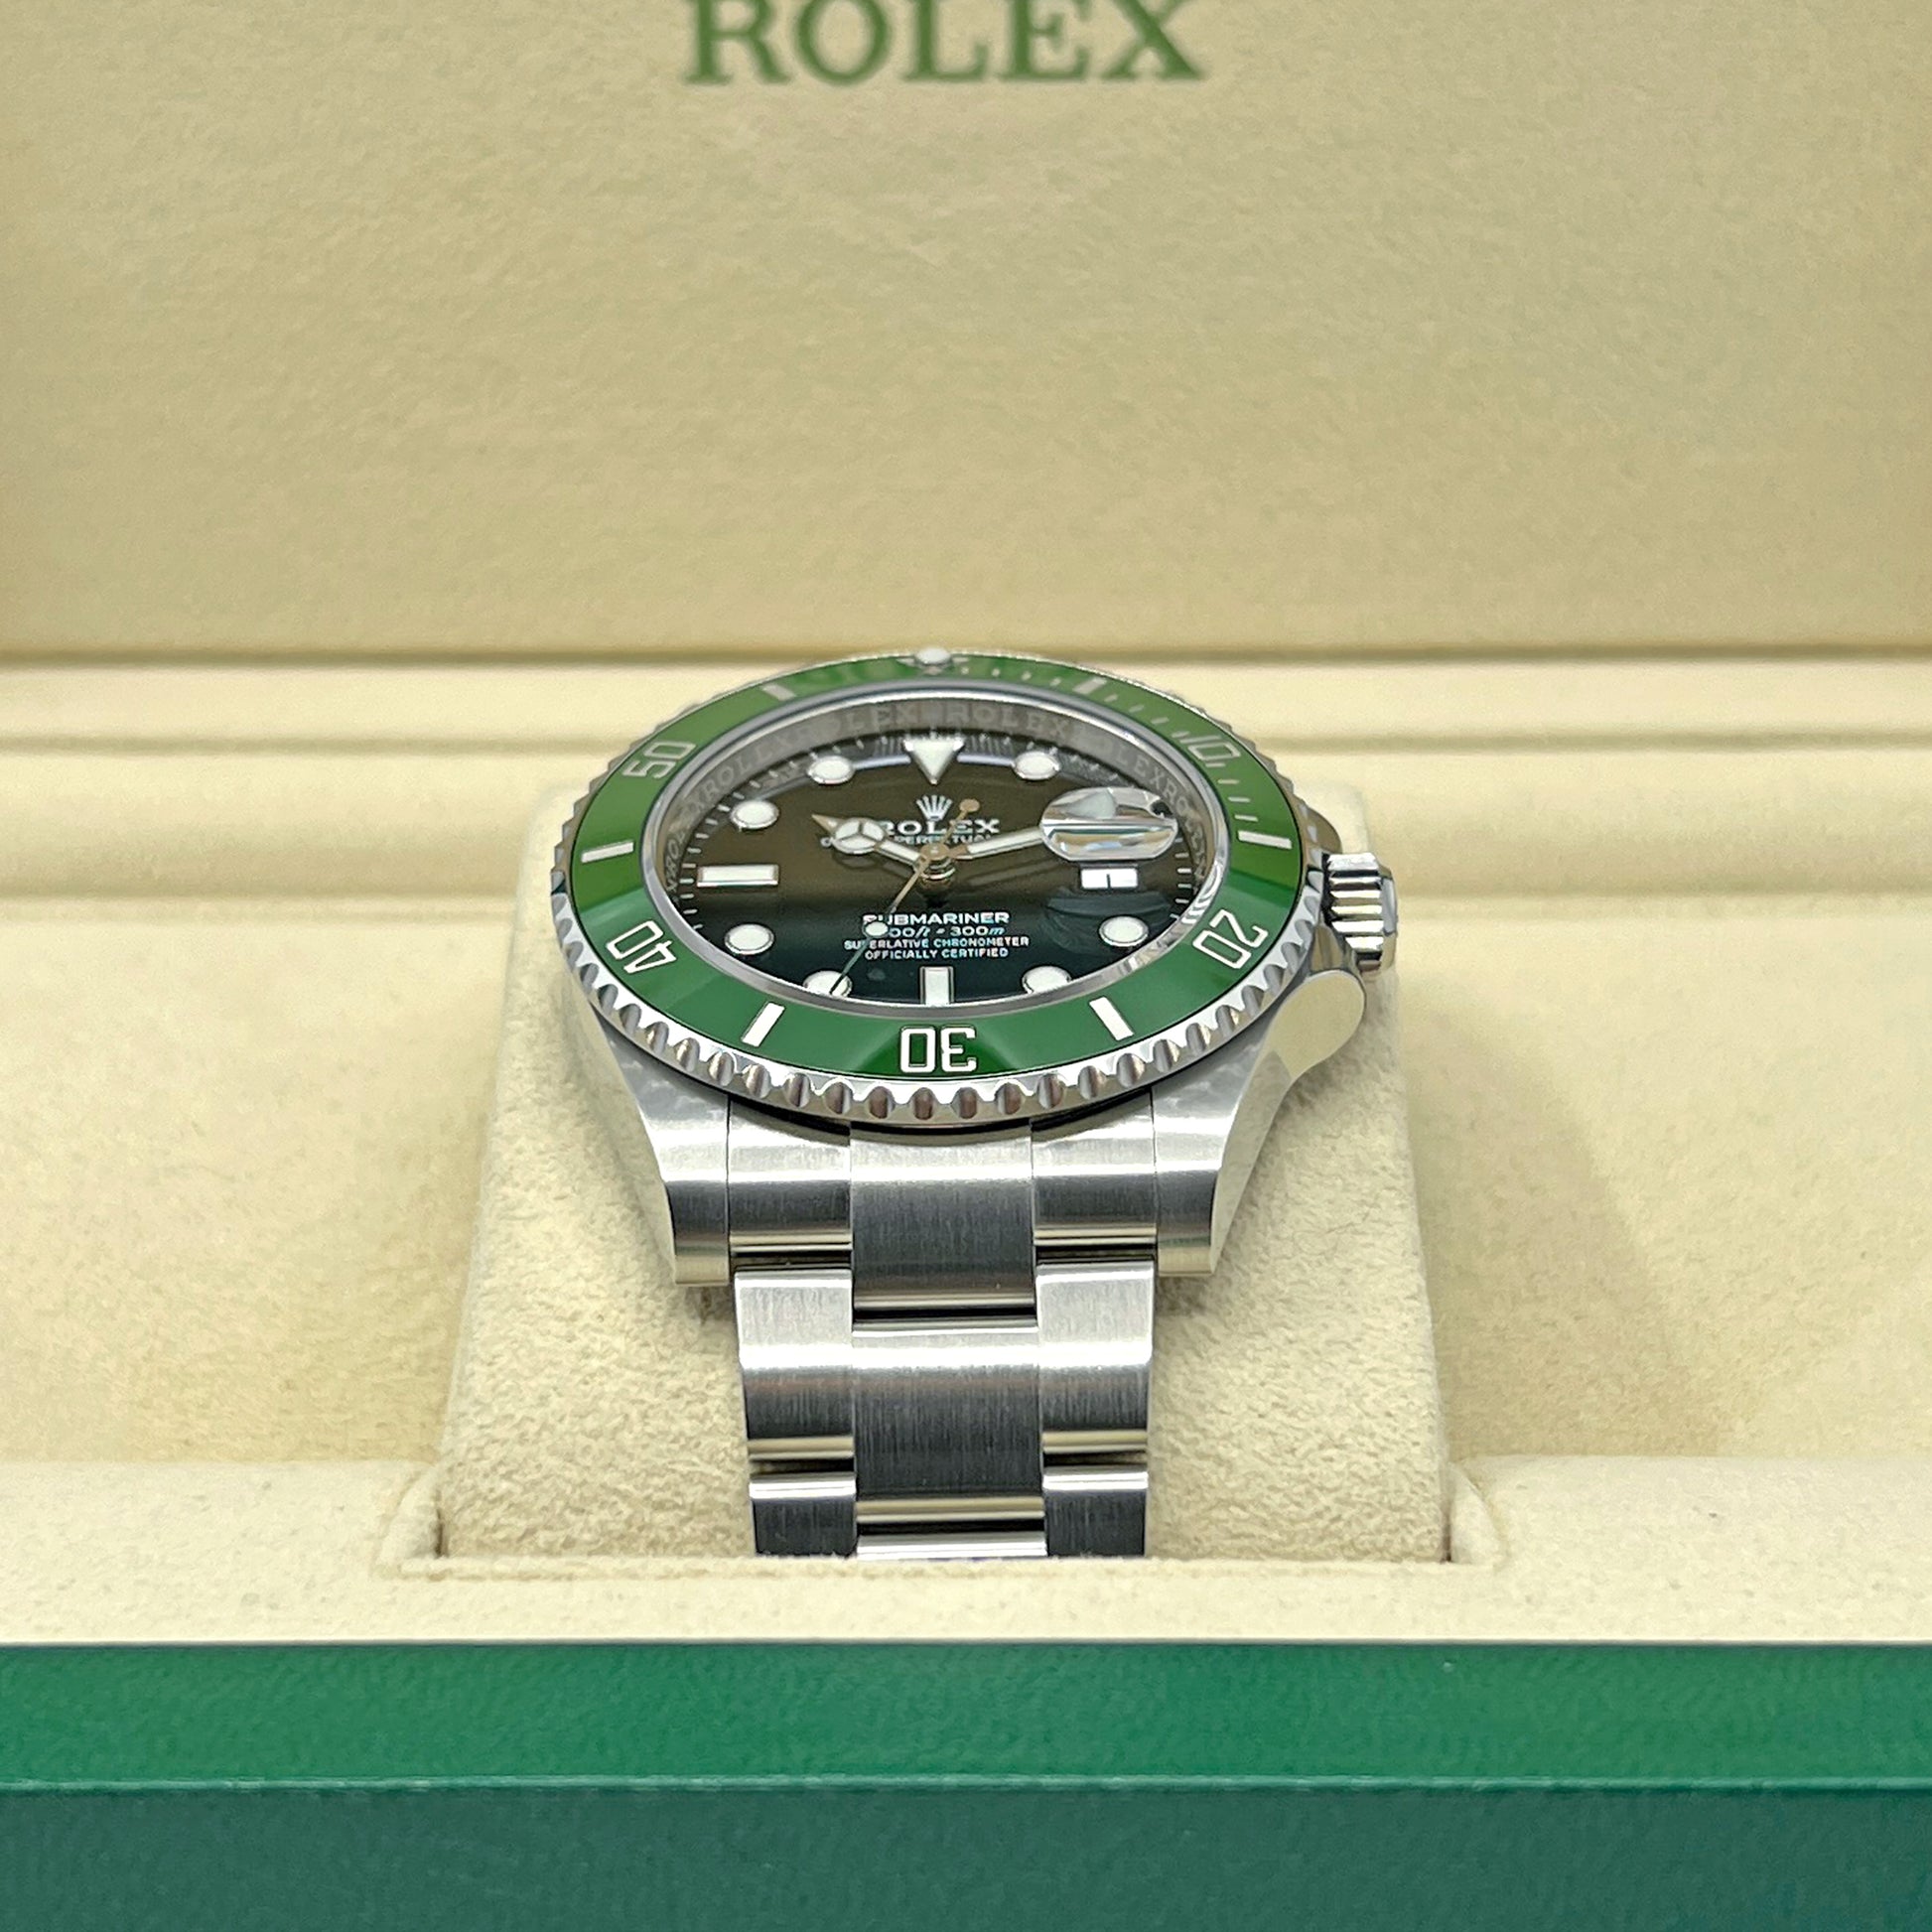 Rolex Submariner Date 41mm Green Bezel (Kermit) Unworn - Watch Limit